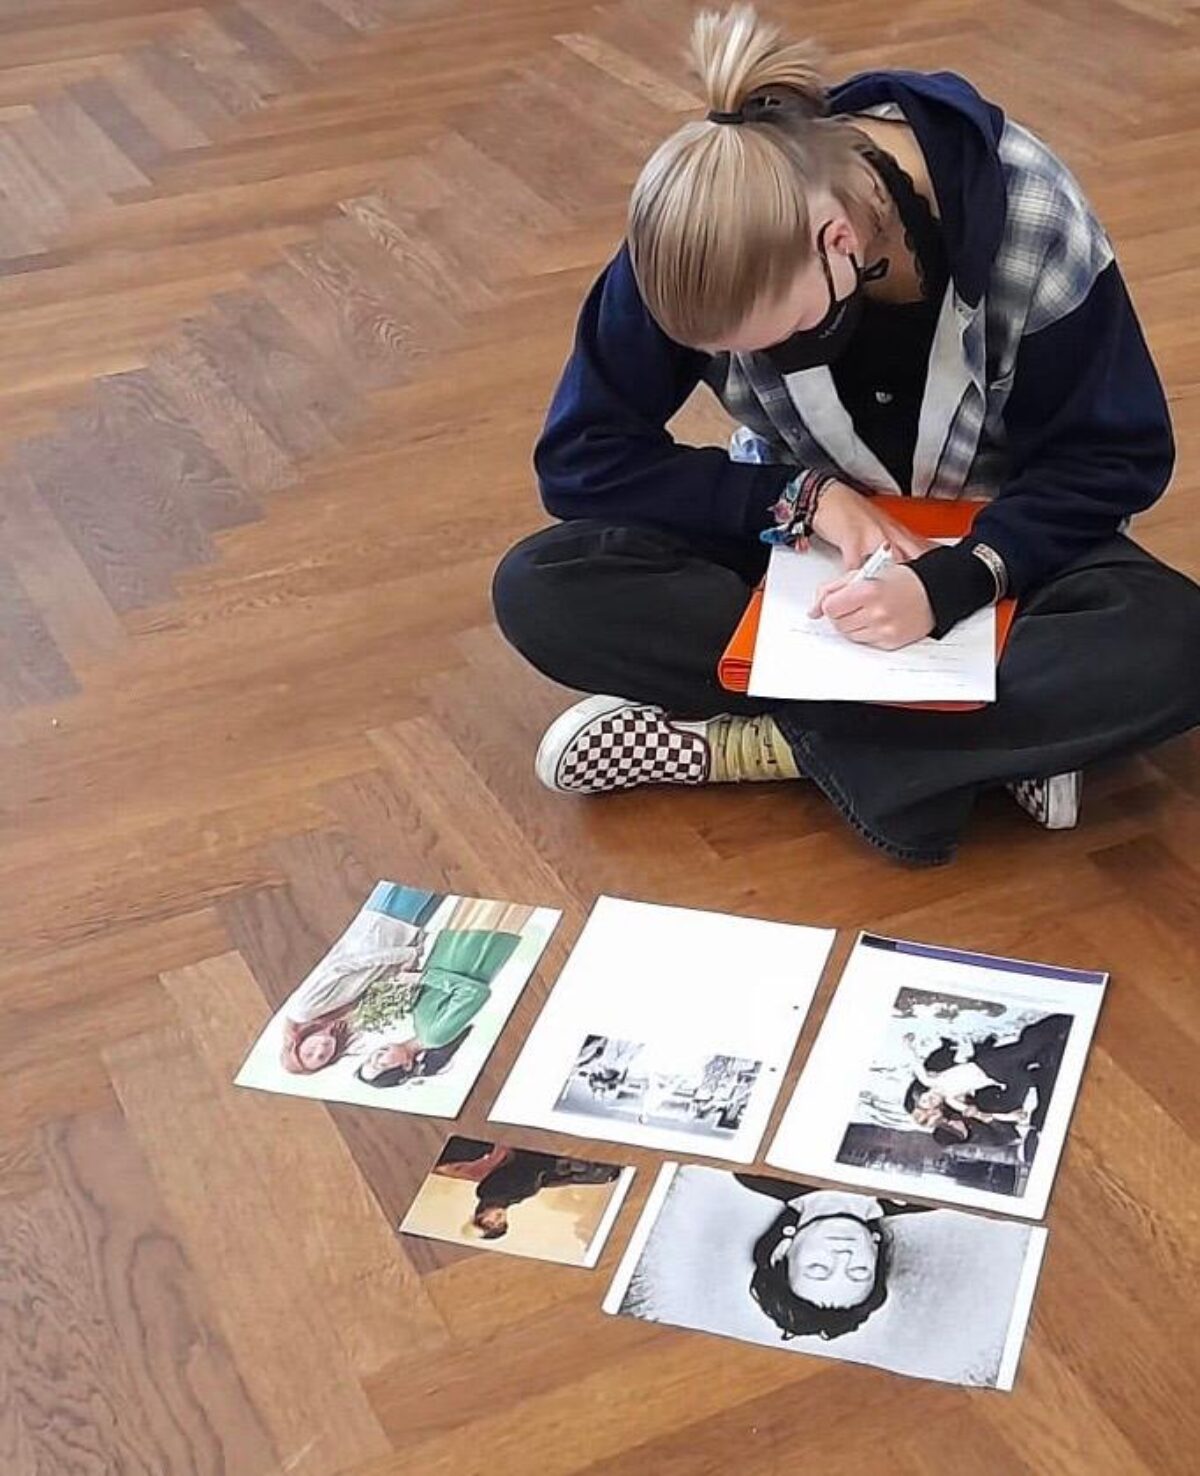 Eine Schülerin sitzt am Boden, vor ihr liegen unterschiedliche Bilder. Sie schreibt einen Text.